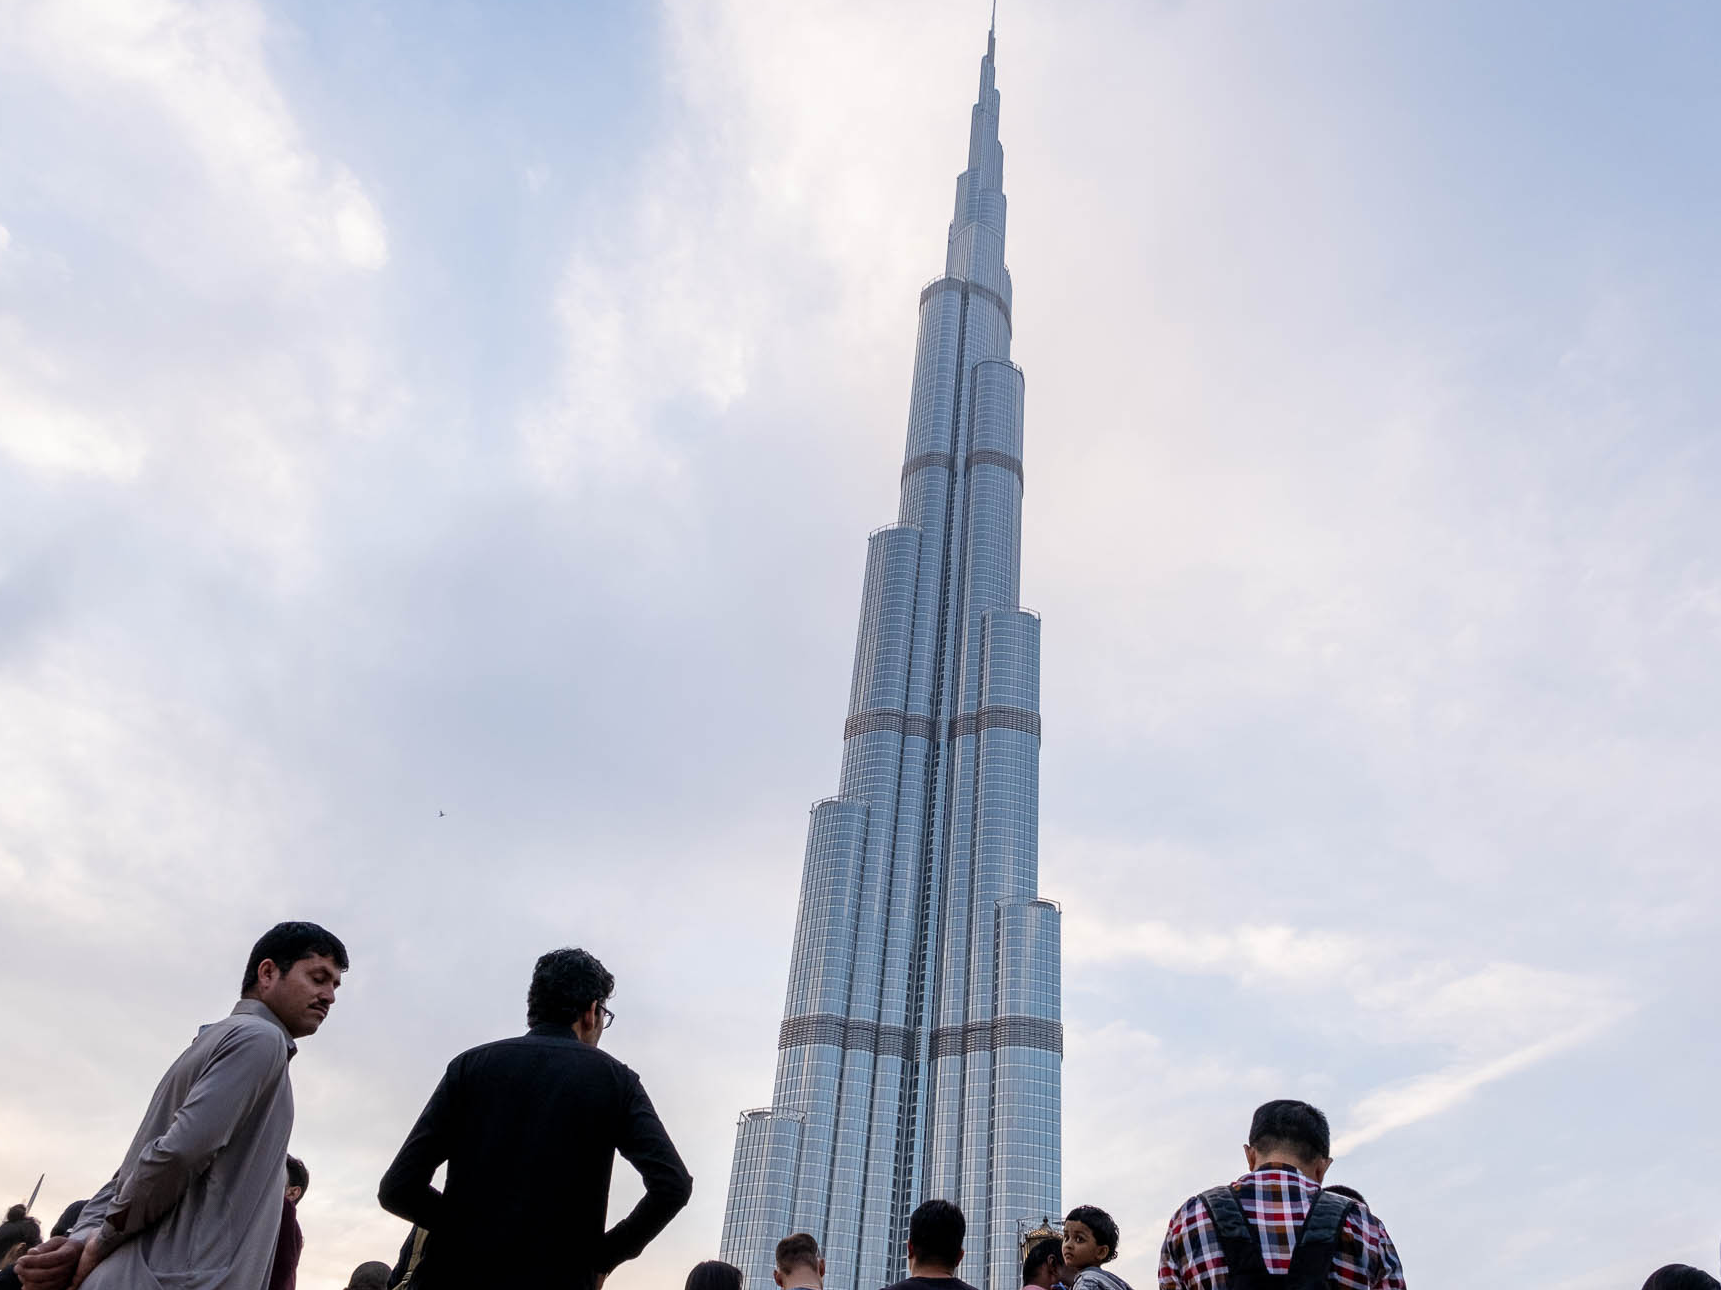 De Burj Khalifa is met 828 meter het hoogste gebouw op aarde.